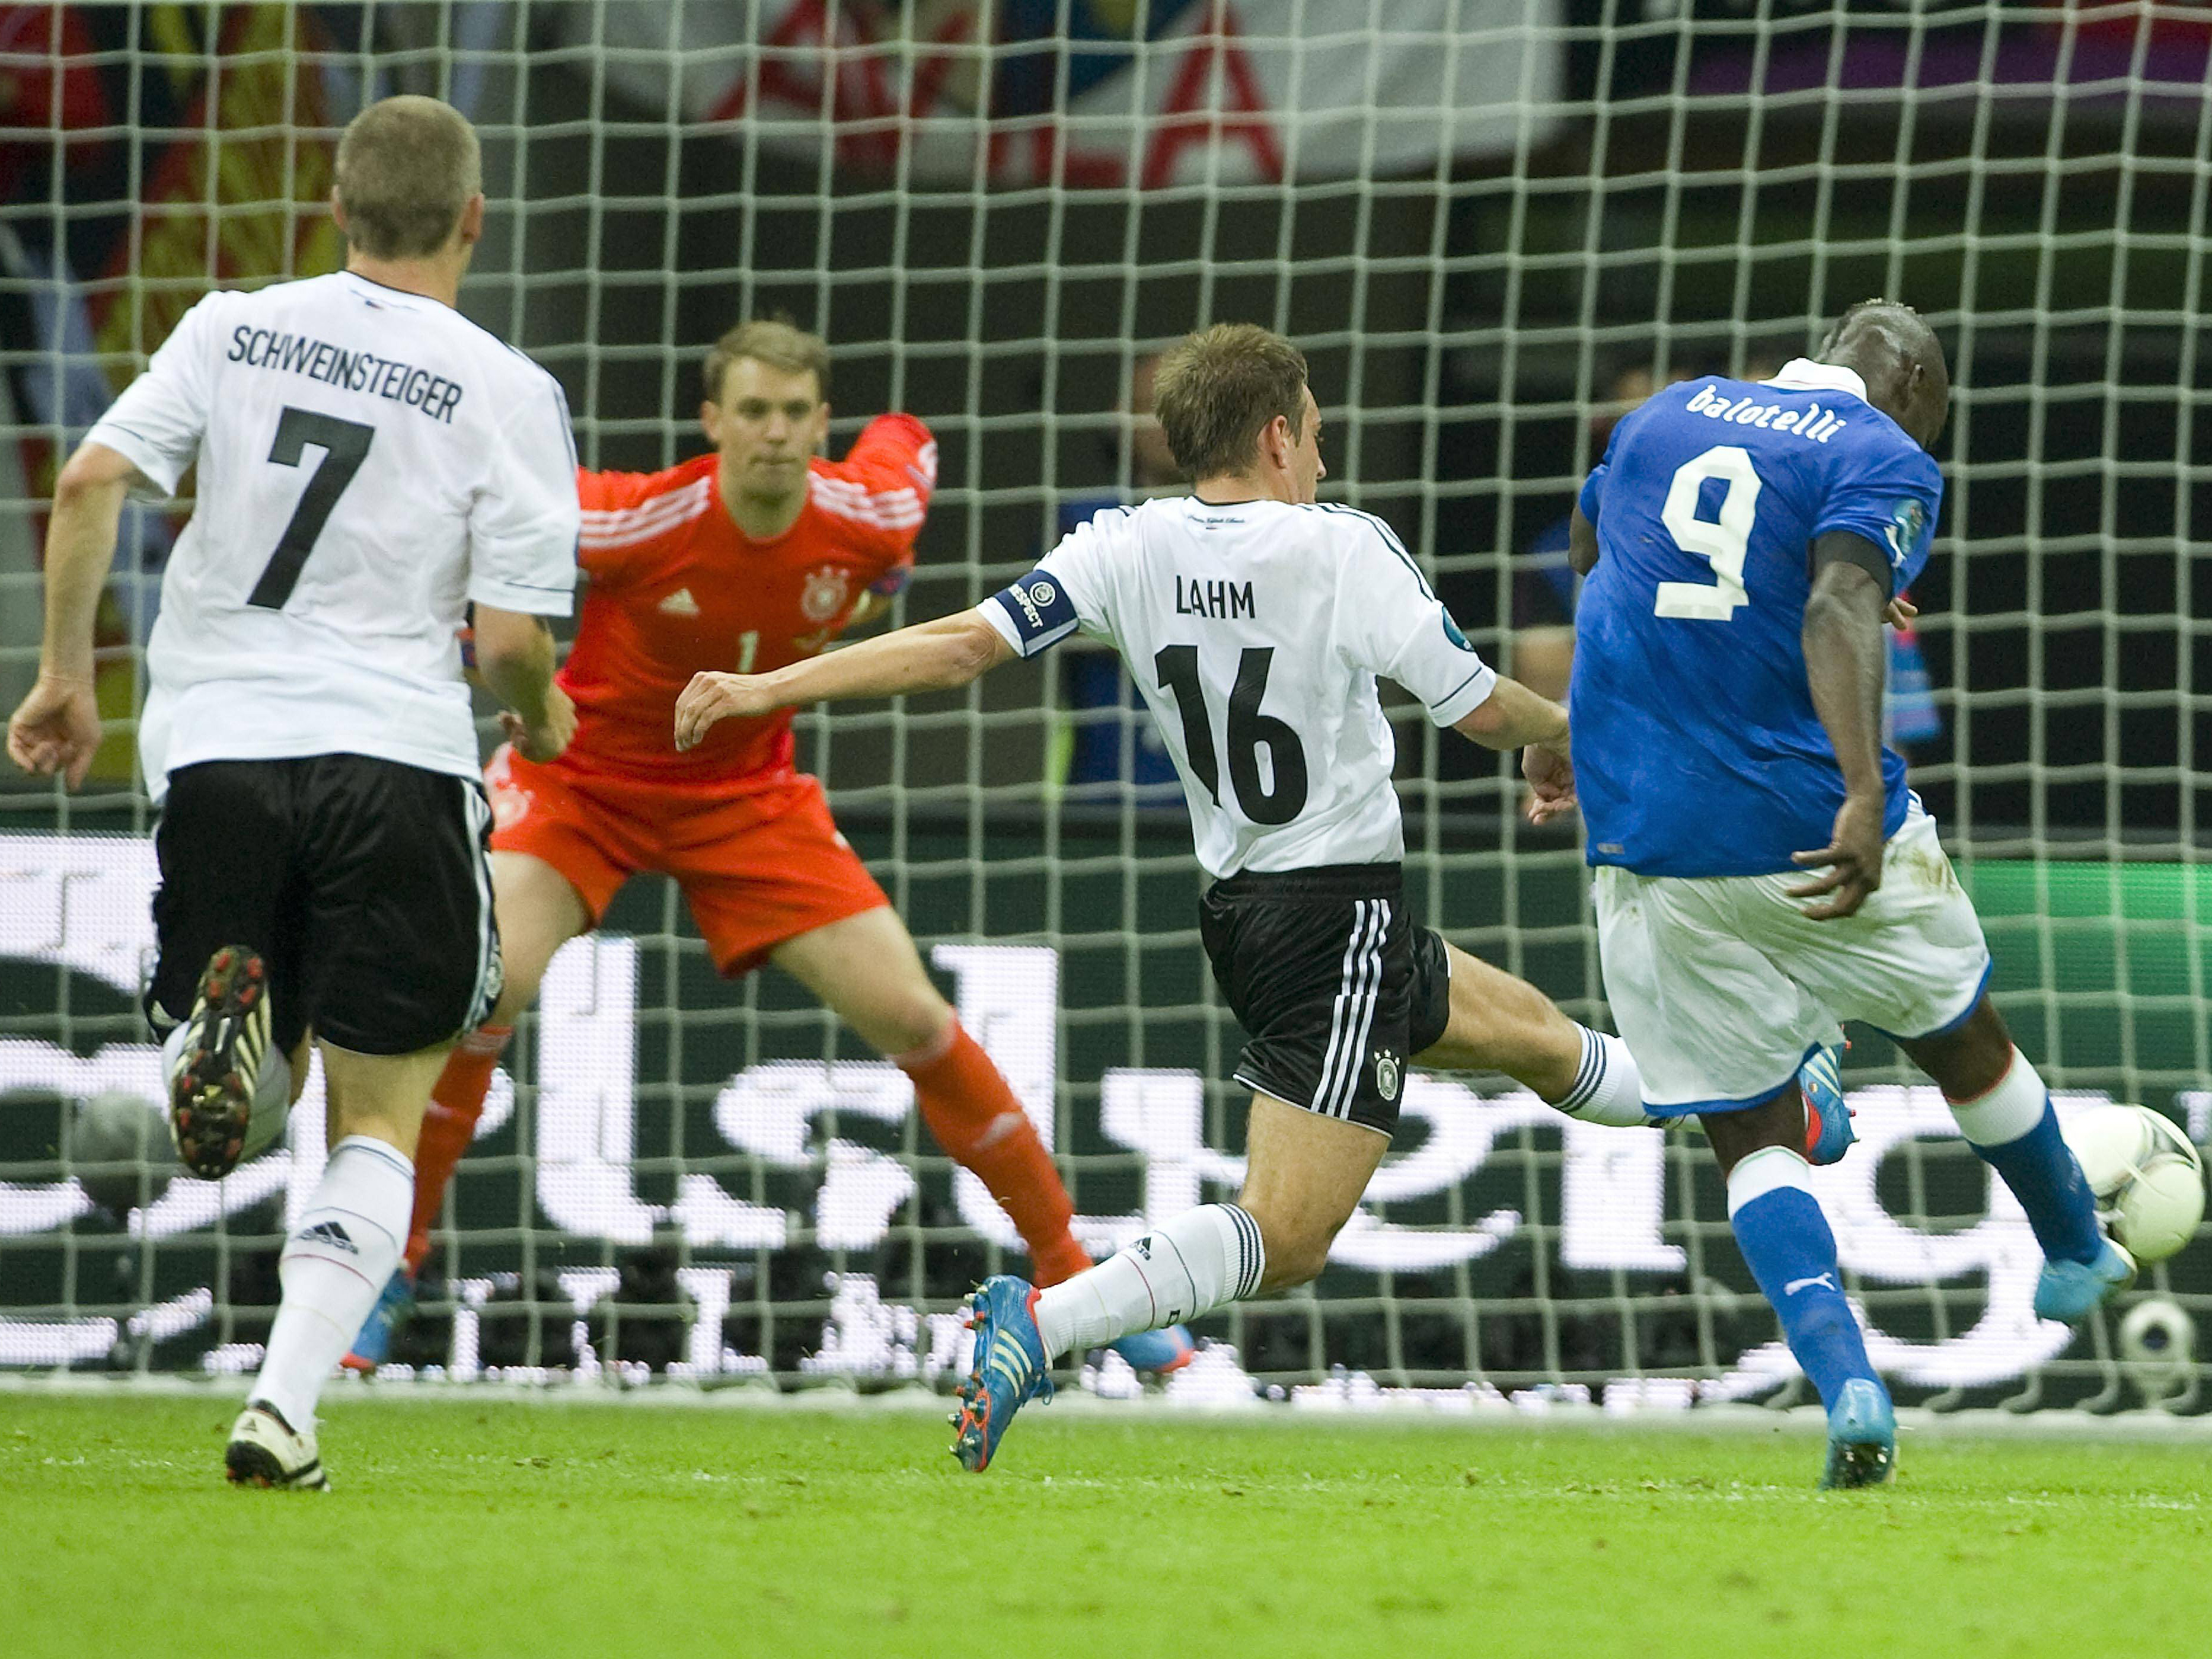 Ook op het EK 2012 gaat het mis voor de Duitsers. Weer is Lahm in de buurt als zijn ploeg op achterstand wordt geschoten. Was het in 2008 Fernando Torres die Lahm aftroefde, dit keer is het de Italiaan Mario Balotelli die Duitsland en de captain met twee treffers velt. Duitsland verliest de halve finale met 2-1.